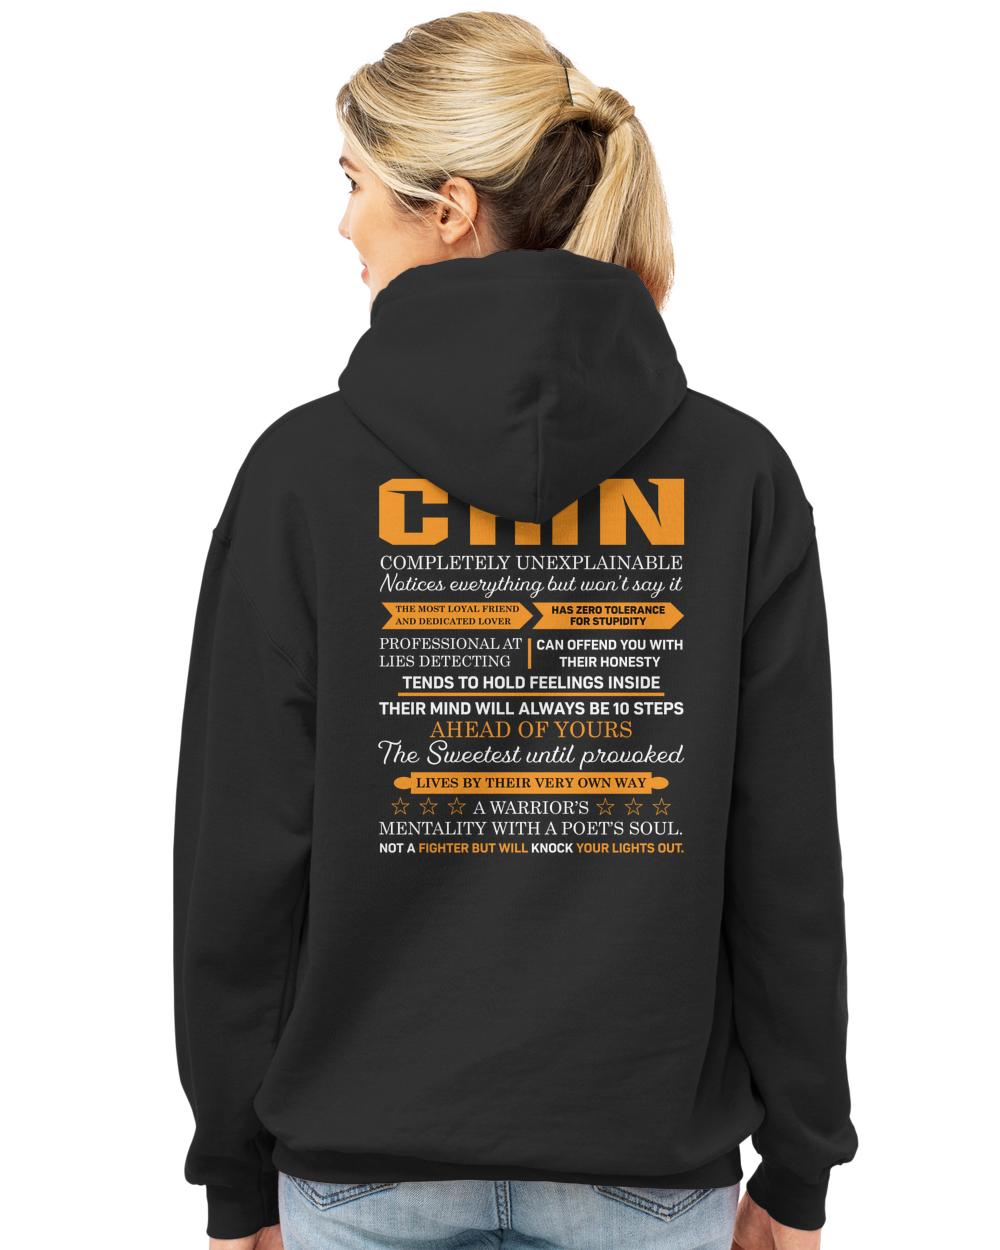 CHIN-H5-N1